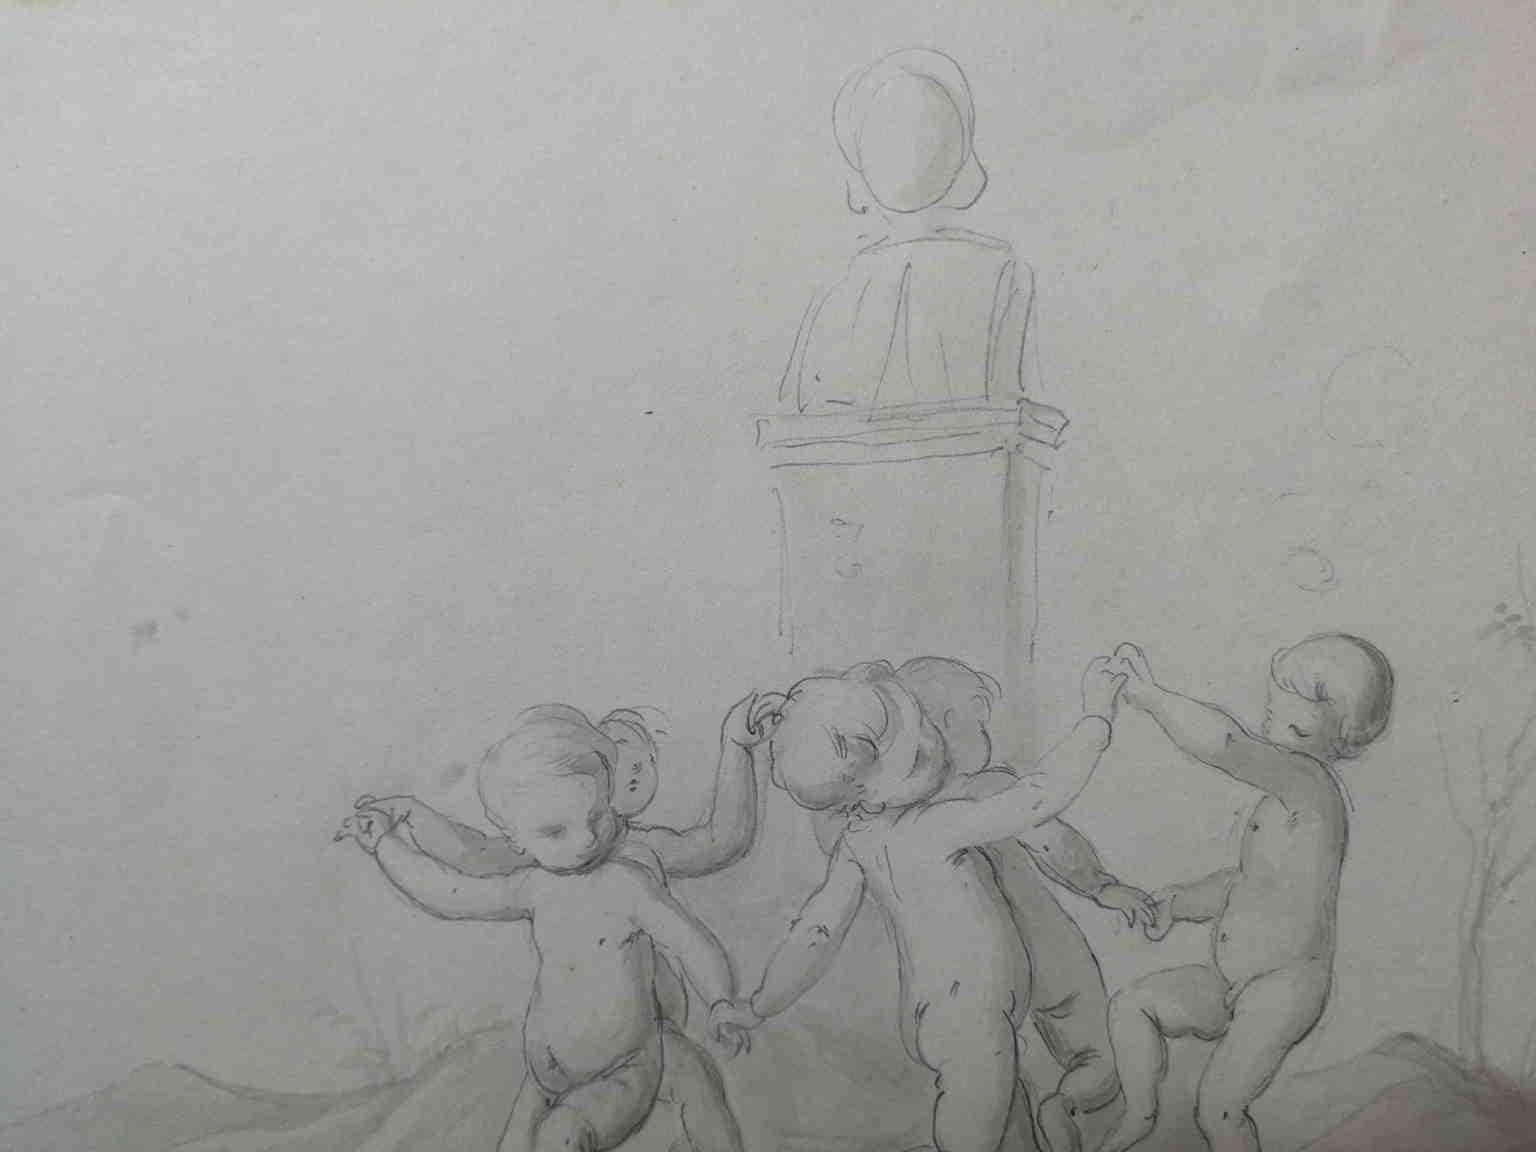 Il piccolo ma squisito disegno, realizzato con una tecnica mista di matita e acquerellatura grigia, raffigura una scena mitologica in cui si nota una gruppo di putti nudi che girano danzando e dandosi la mano attorno ad una 